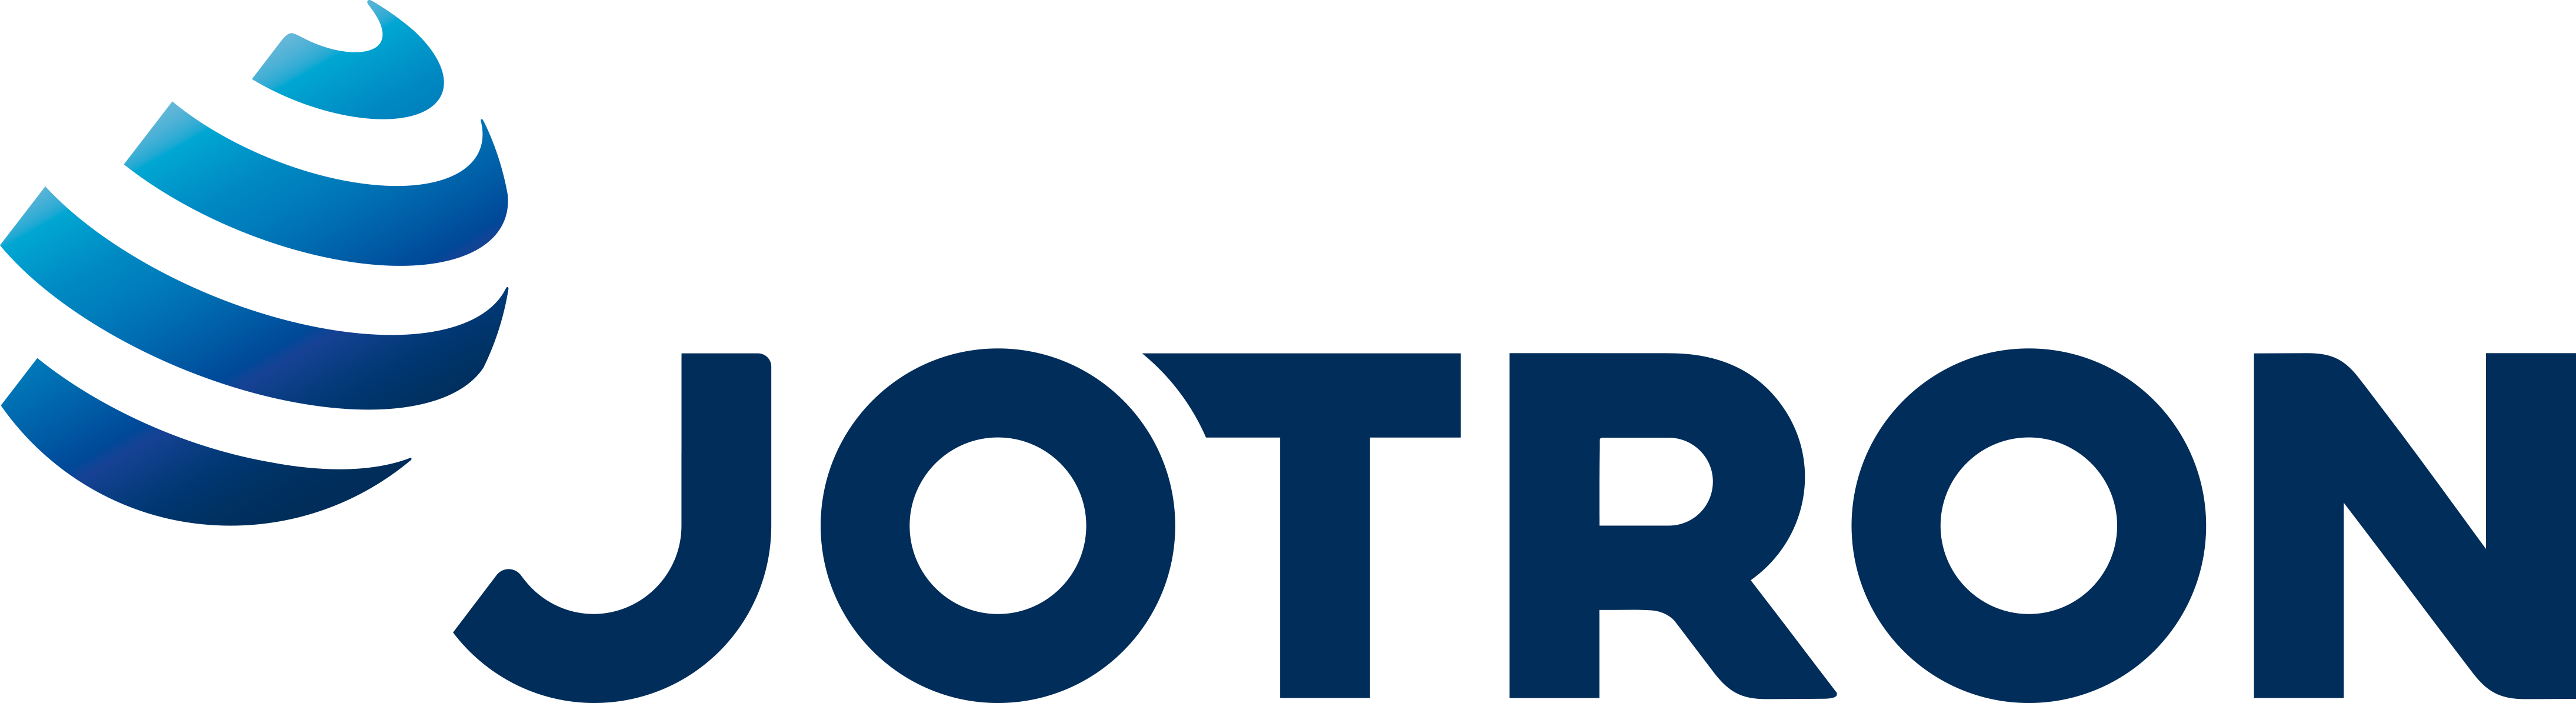 Jotron logo - Vision Marine Partner